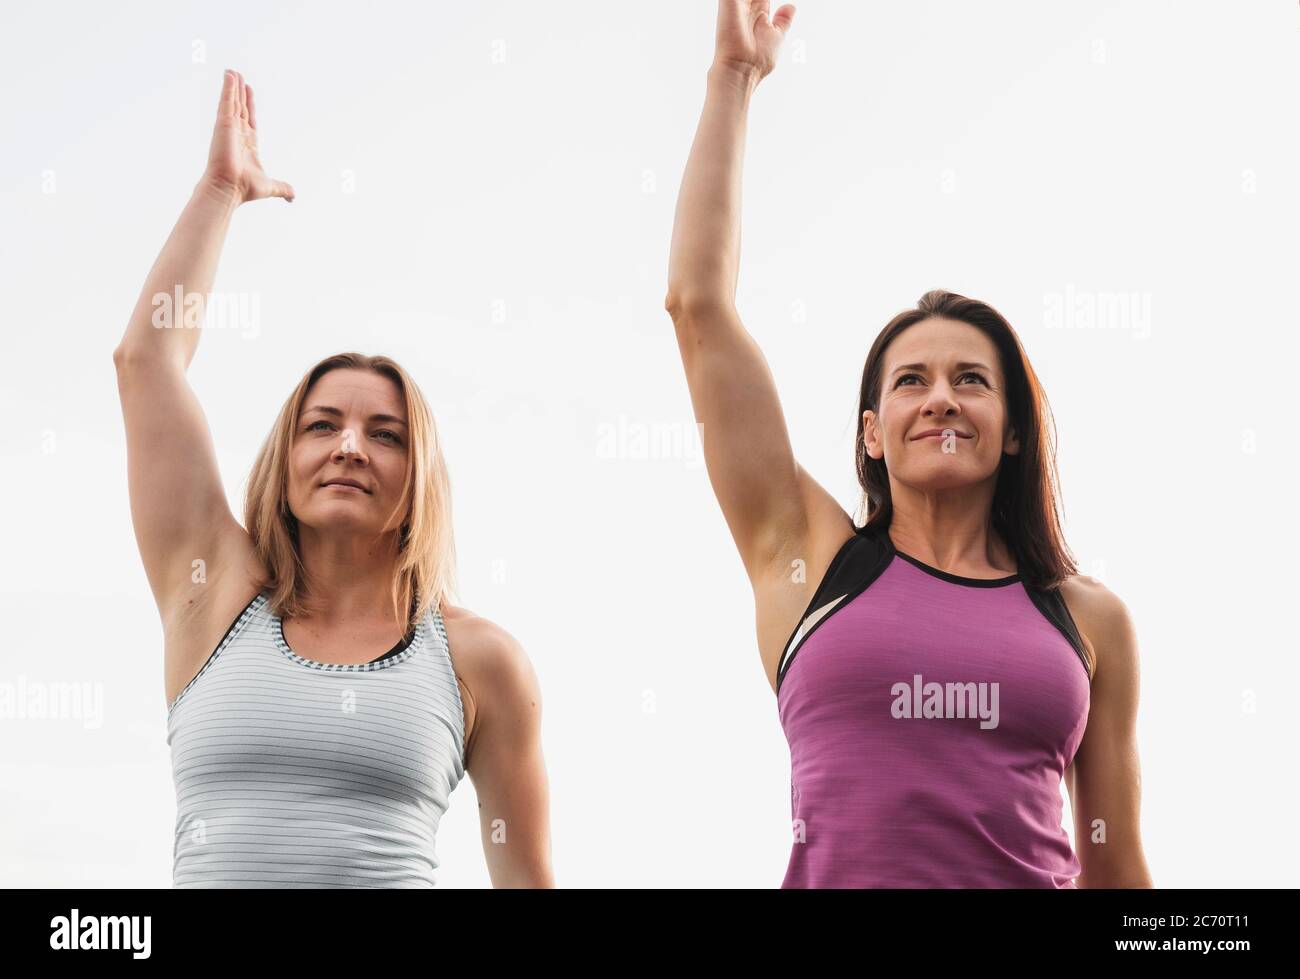 Zwei Frauen trainieren im Freien Stretchübungen, die ihre Arme in der Luft in einem niedrigen Winkel Ansicht in einem gesunden aktiven Lebensstil Konzept heben Stockfoto